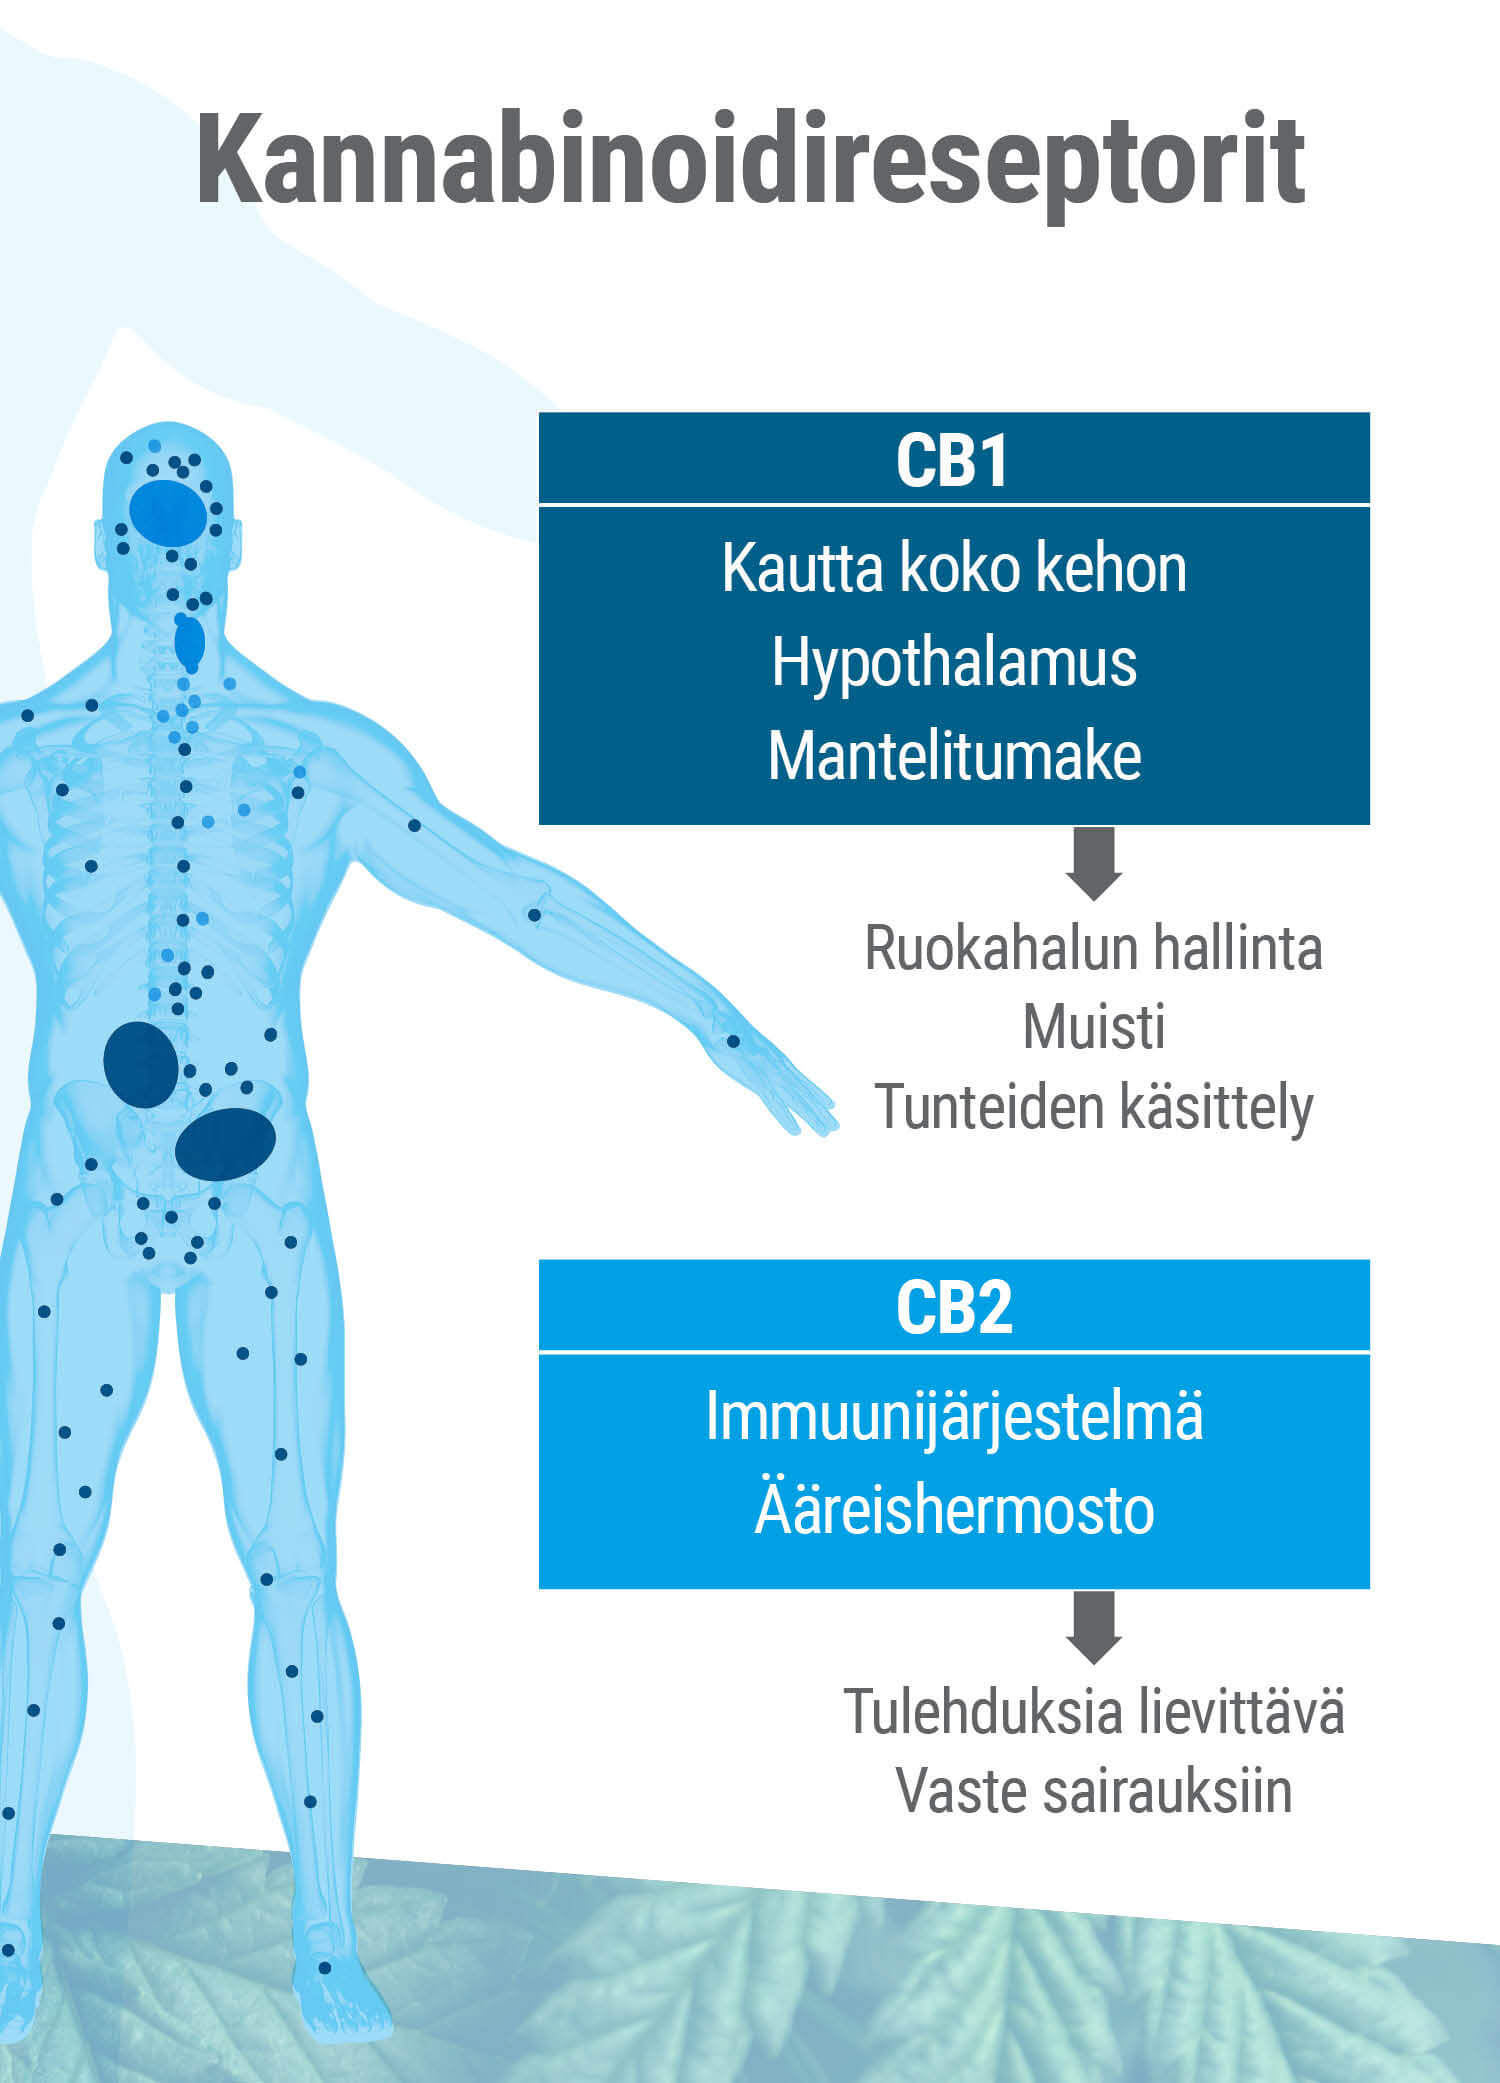 Endokannabinoidijärjestelmässä esiintyy kahta erilaista reseptorityyppiä, CB1 ja CB2